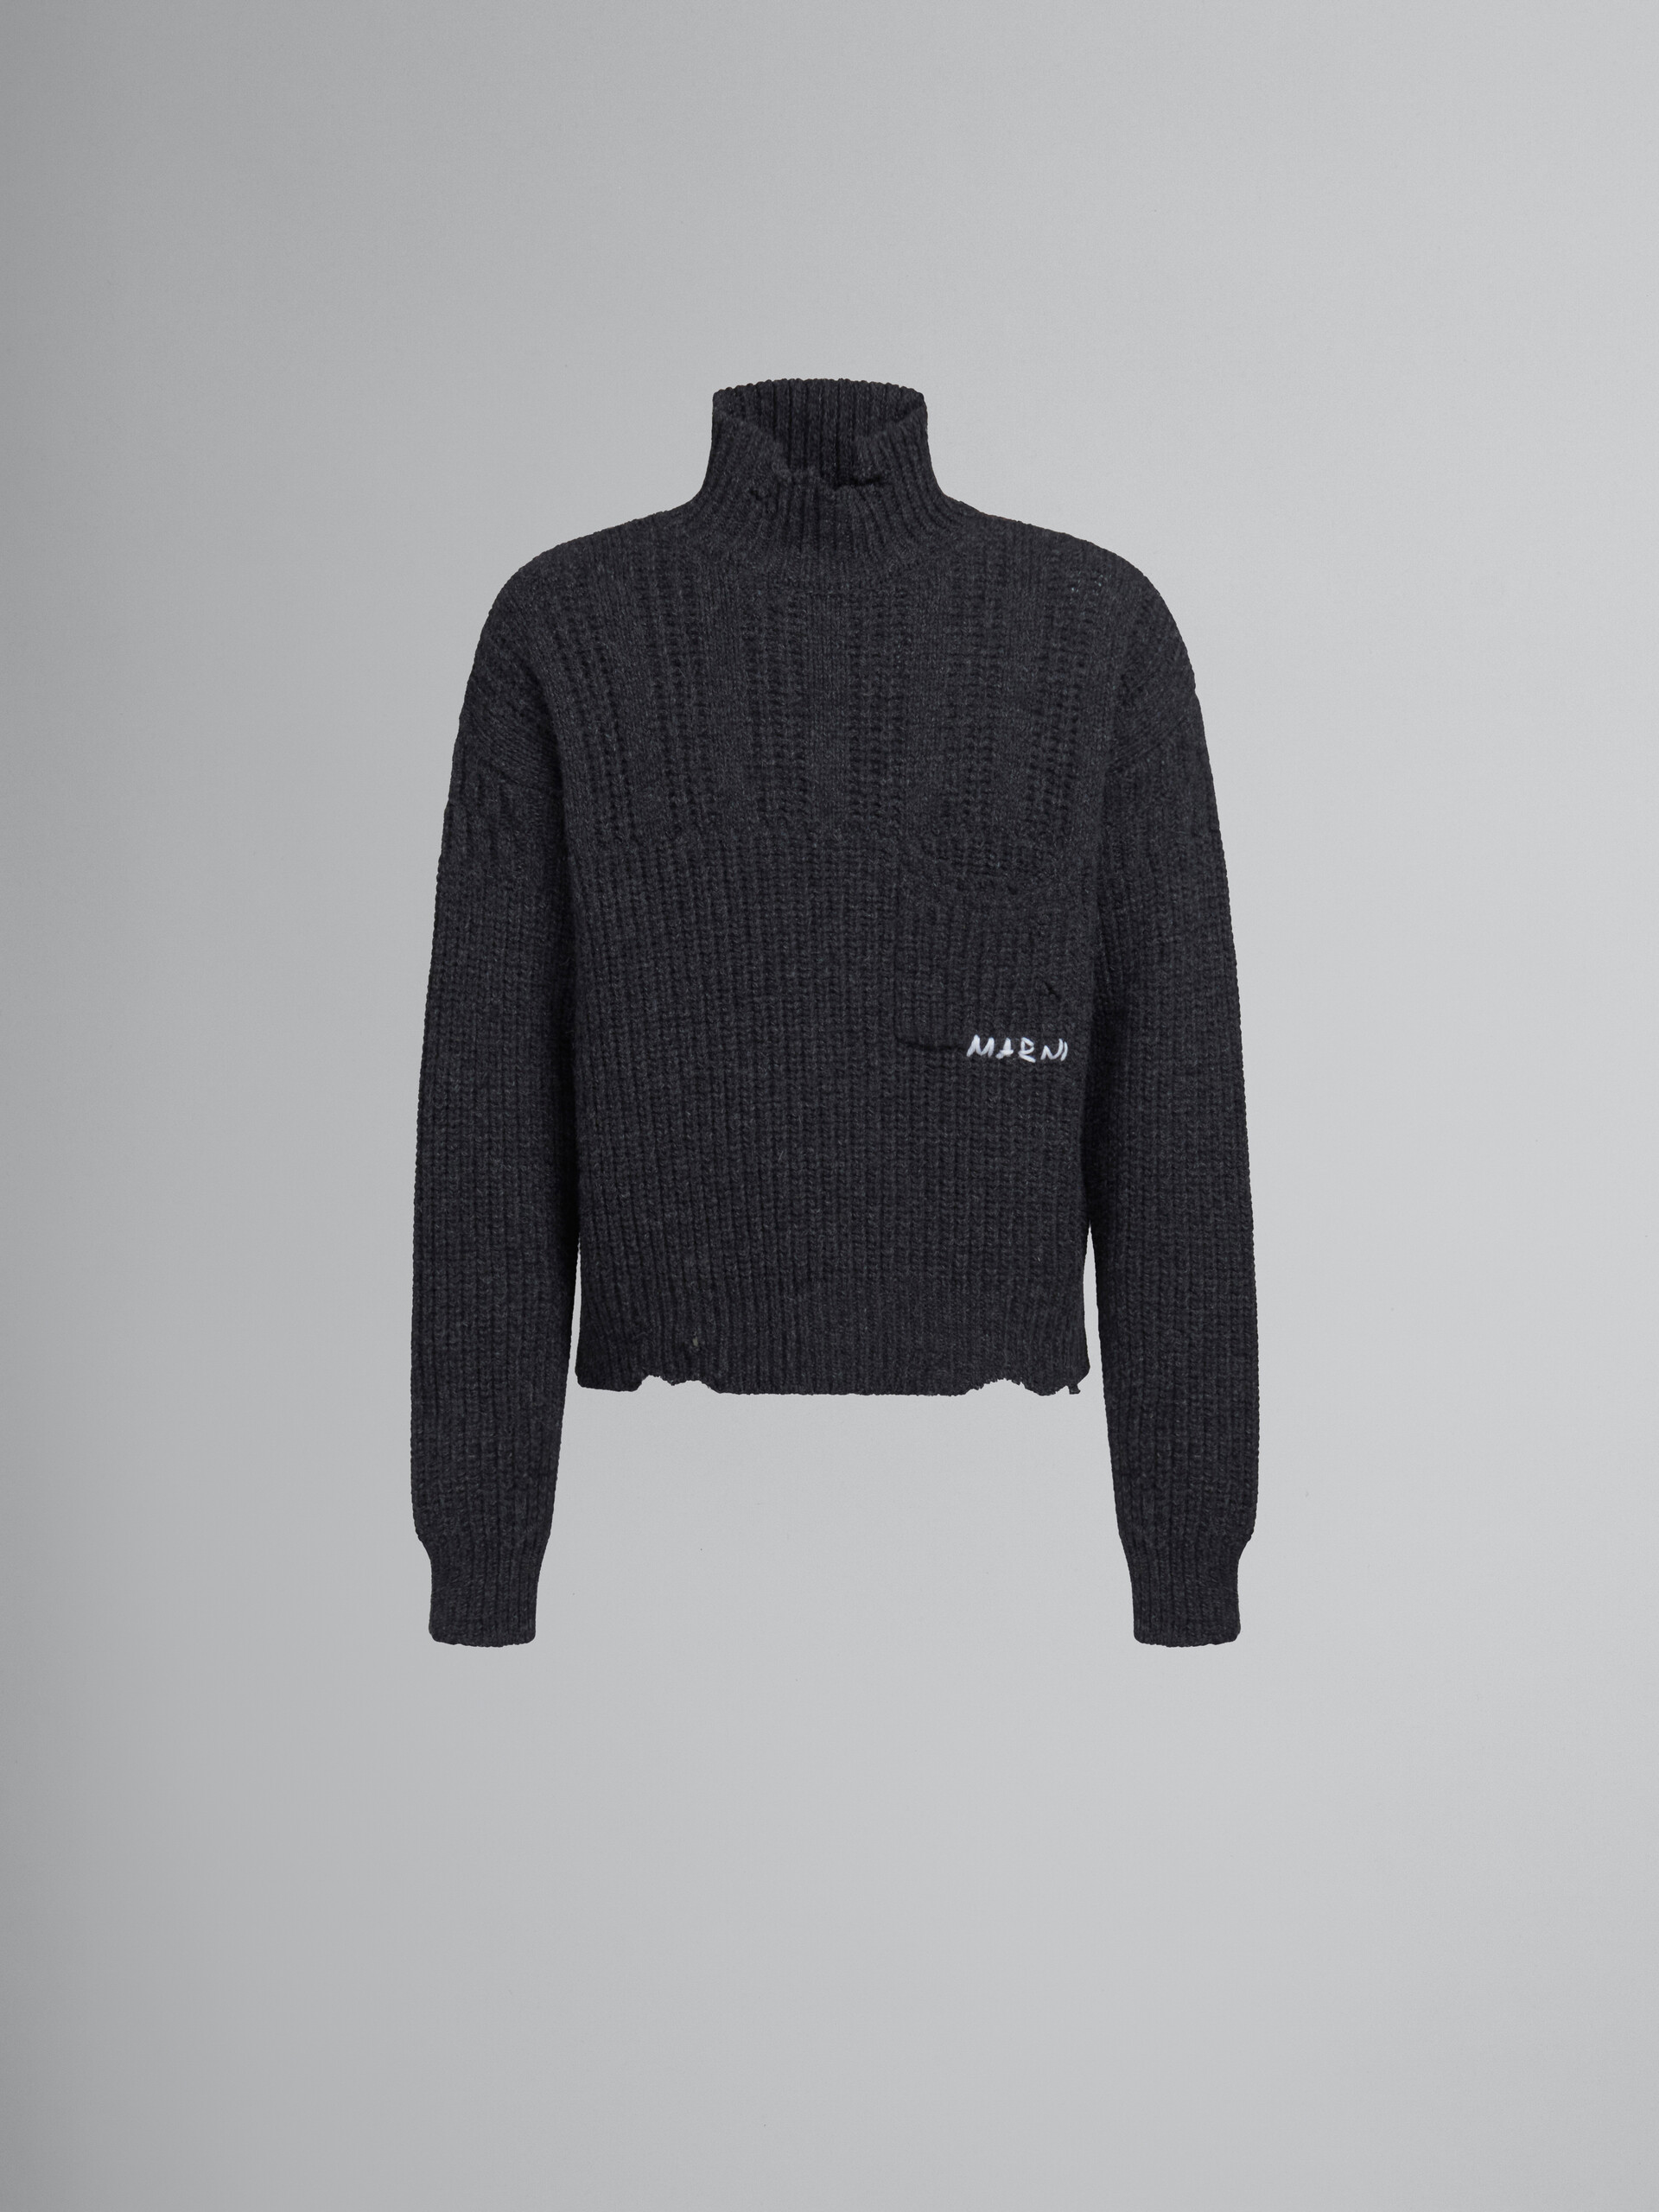 Jersey gris de lana virgen con bajo deshilachado - jerseys - Image 1